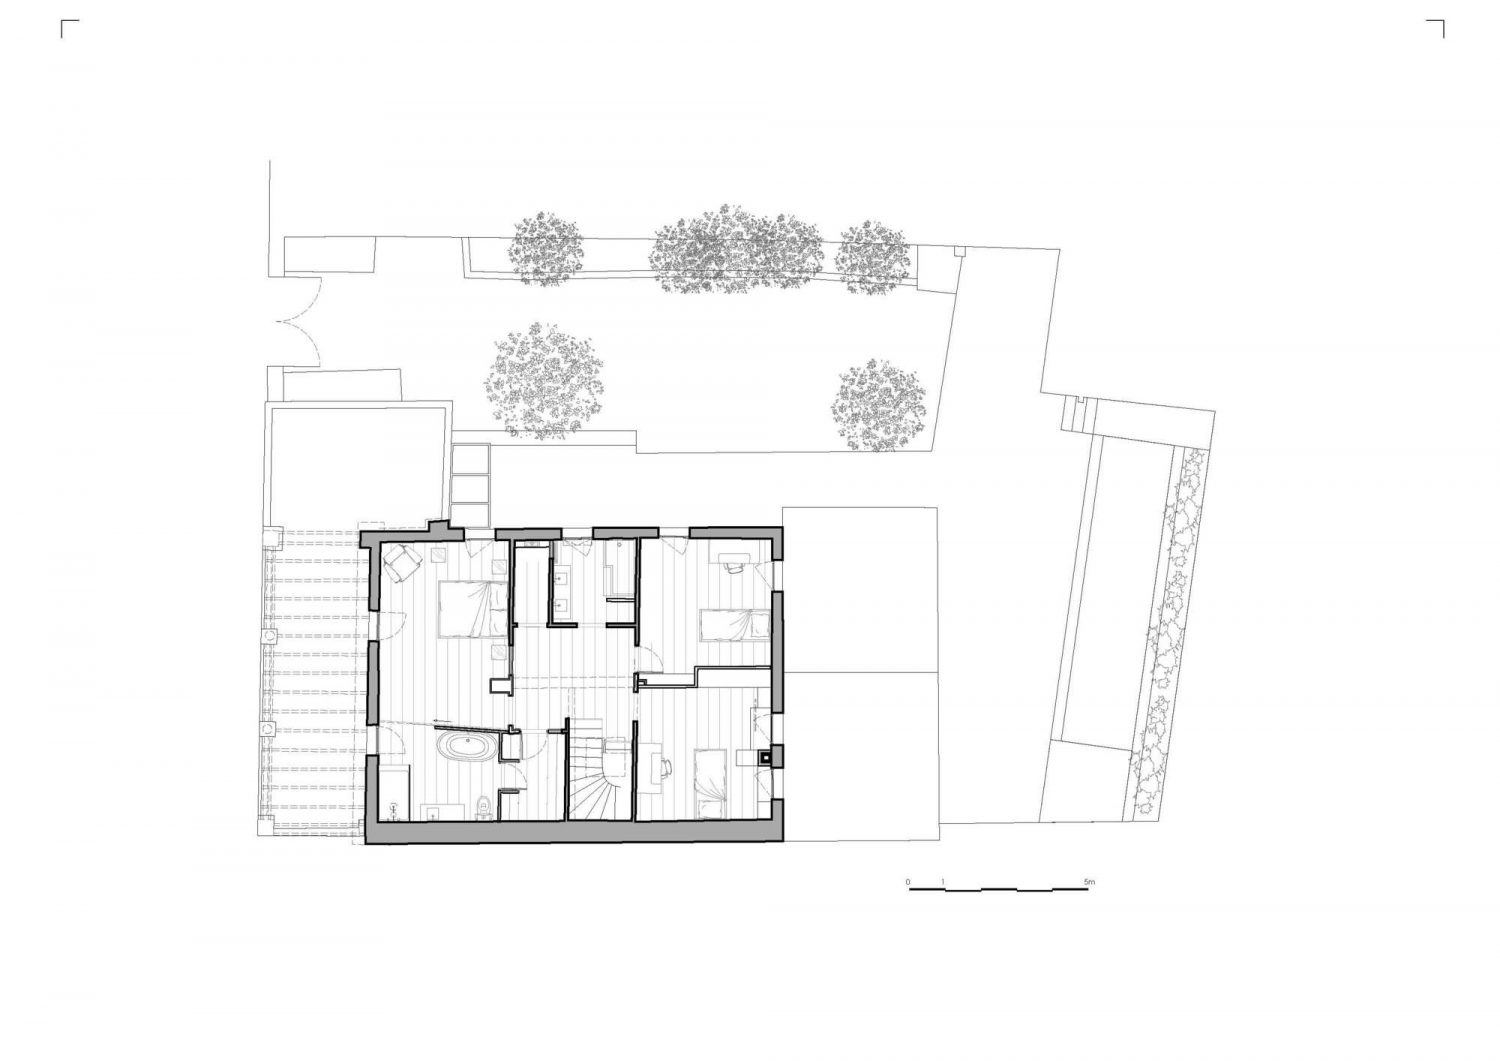 MSR House by Brengues Le Pavec architectes